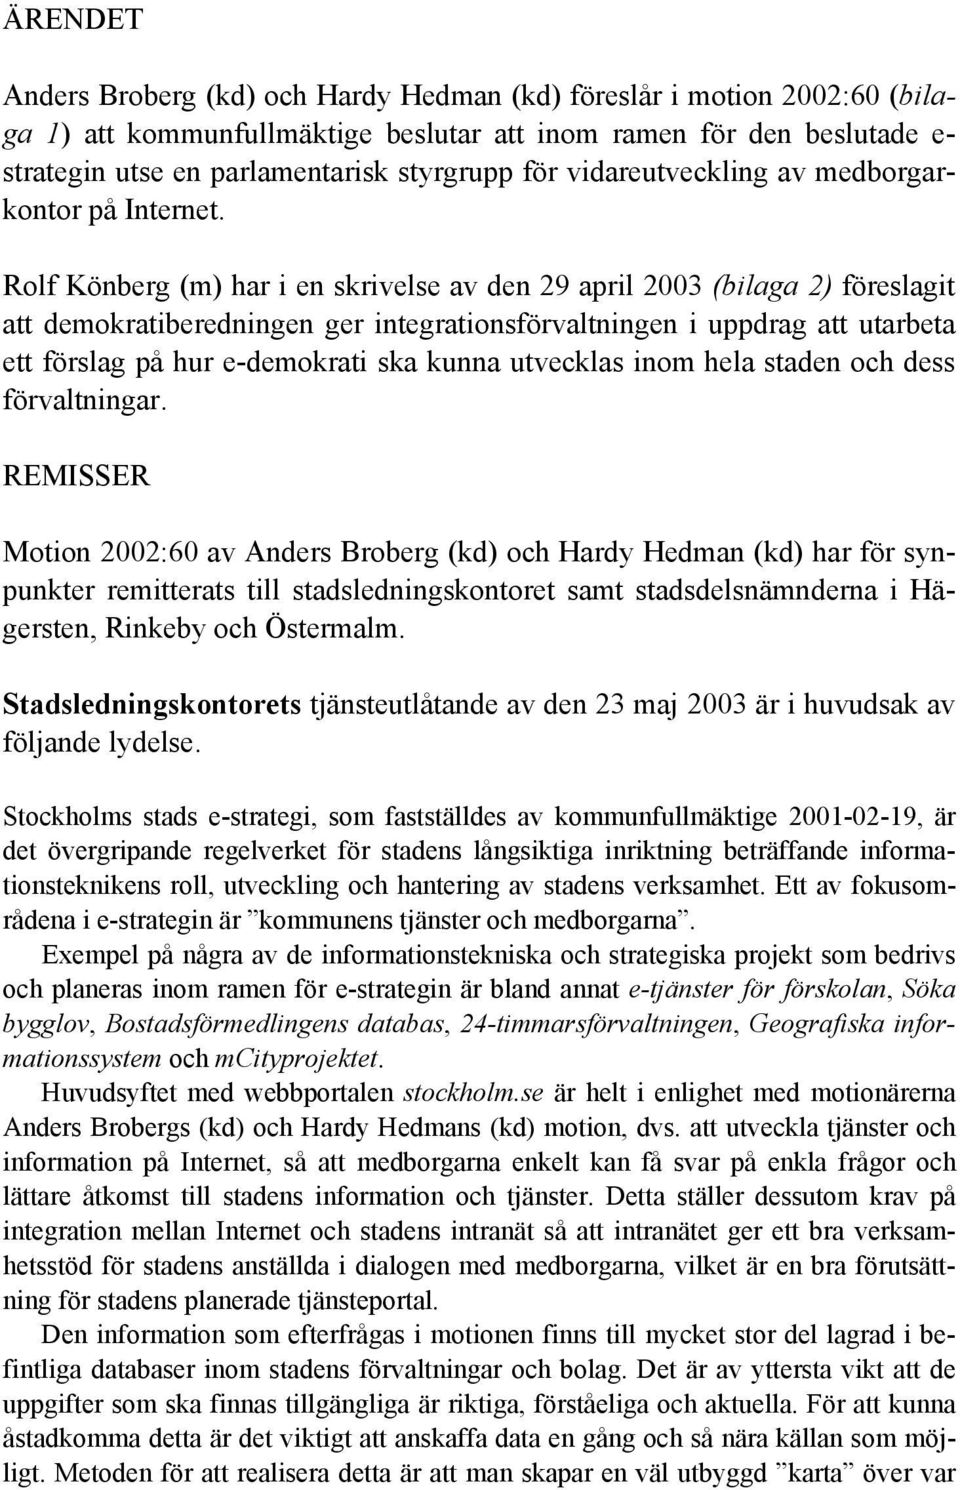 Rolf Könberg (m) har i en skrivelse av den 29 april 2003 (bilaga 2) föreslagit att demokratiberedningen ger integrationsförvaltningen i uppdrag att utarbeta ett förslag på hur e-demokrati ska kunna